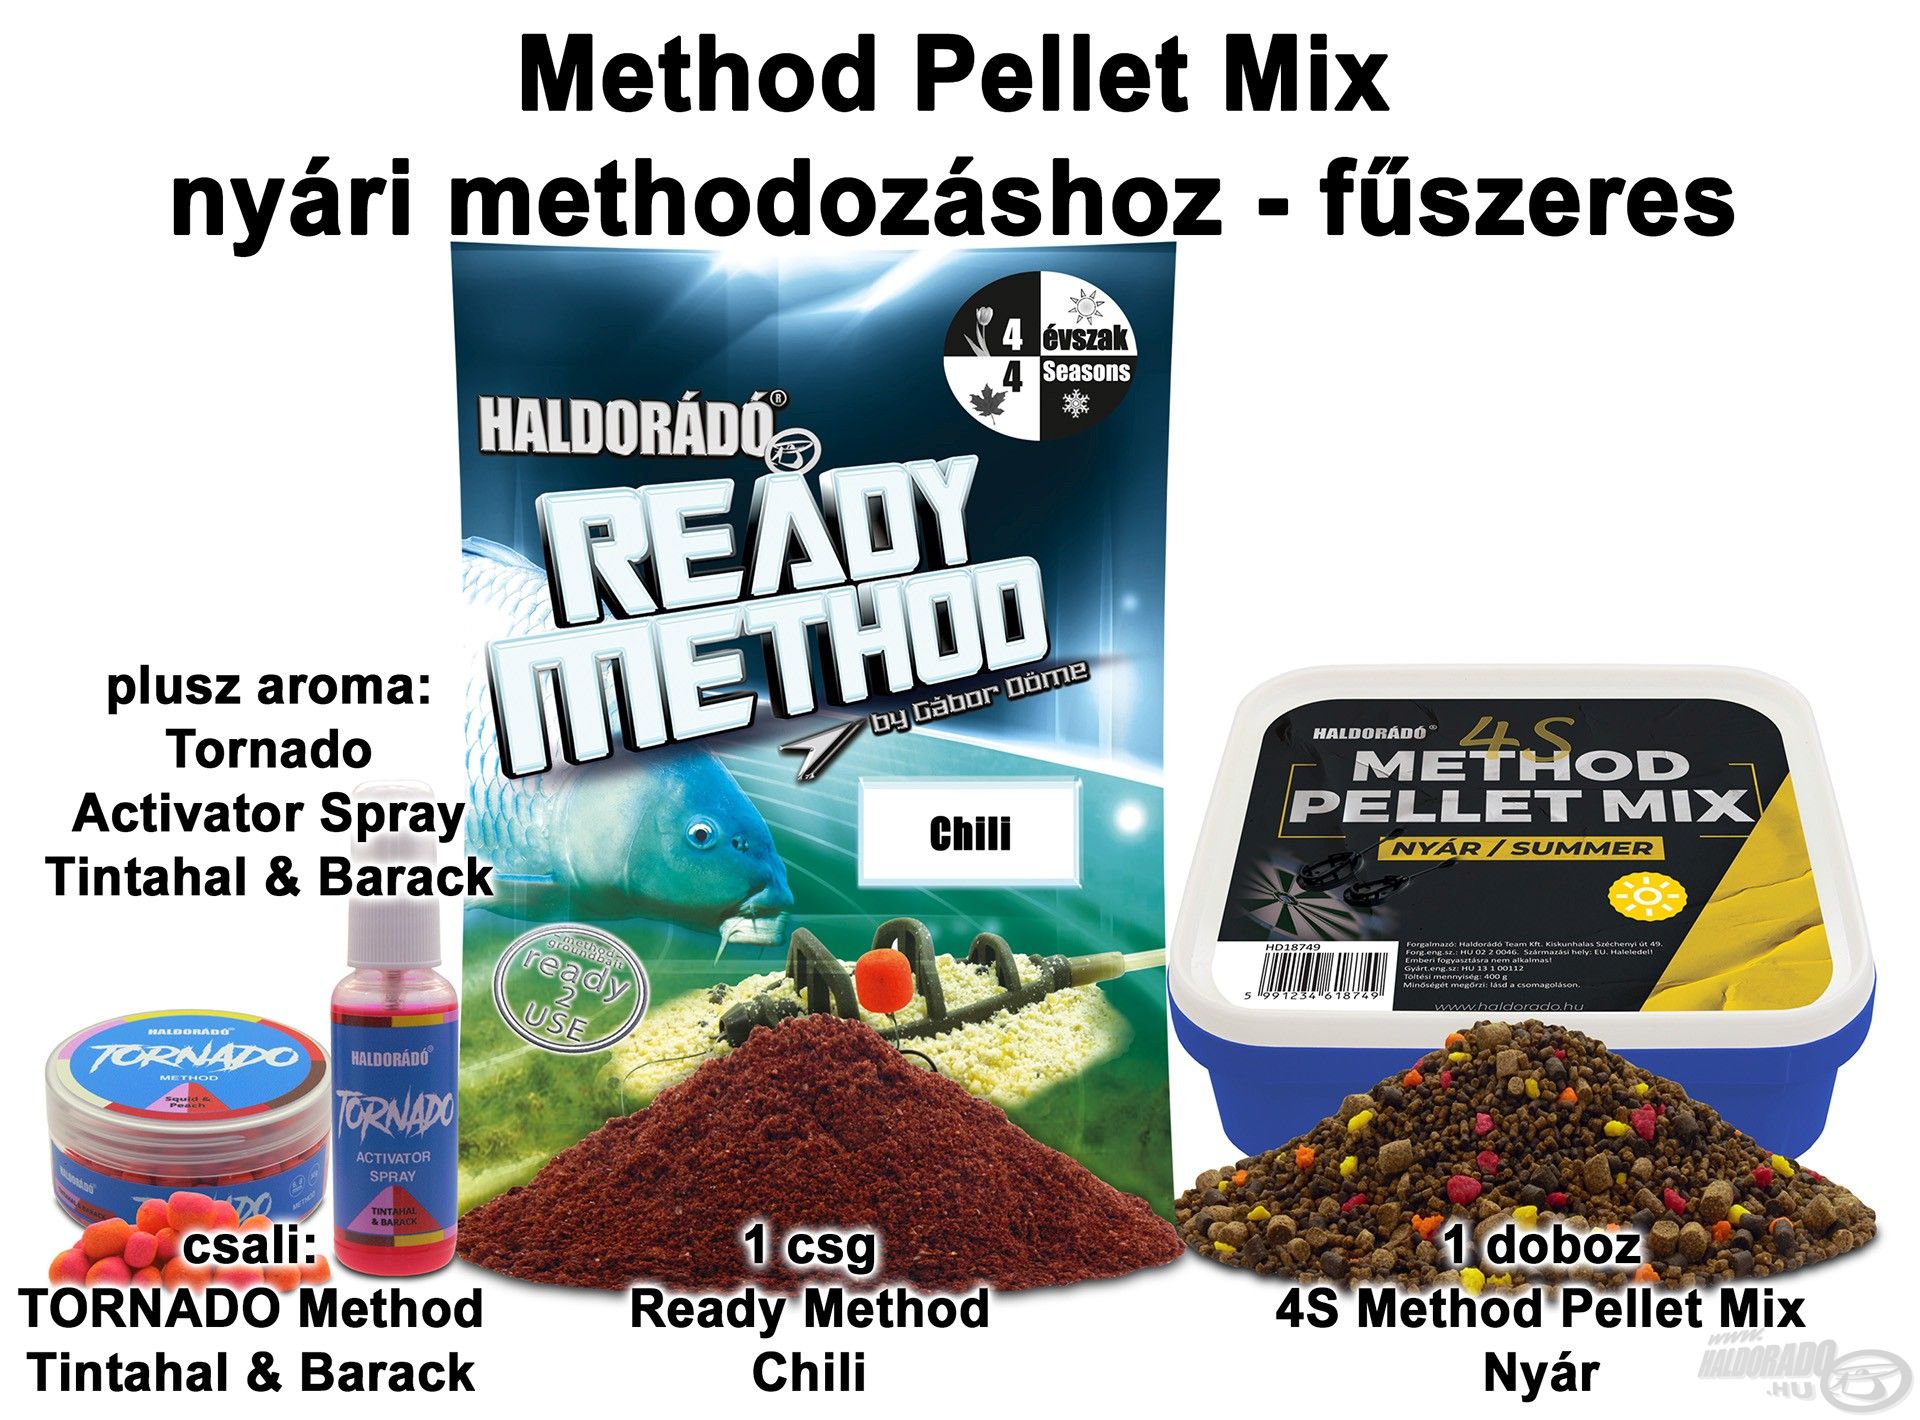 Method Pellet Mix nyári methodozáshoz - fűszeres